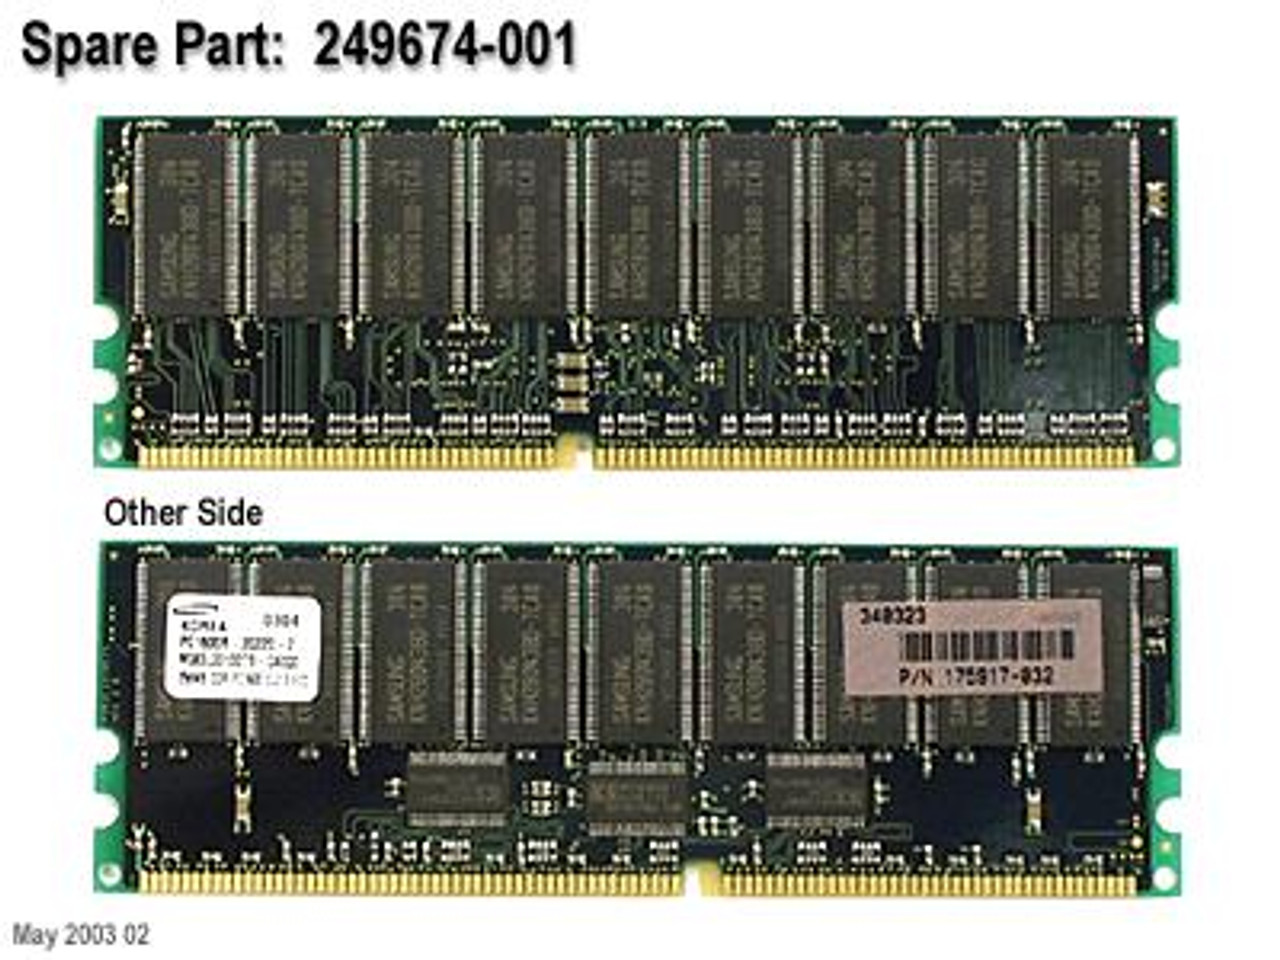 SPS-MEM;DDR SDRAM;PC1600;256MB - 249674-001